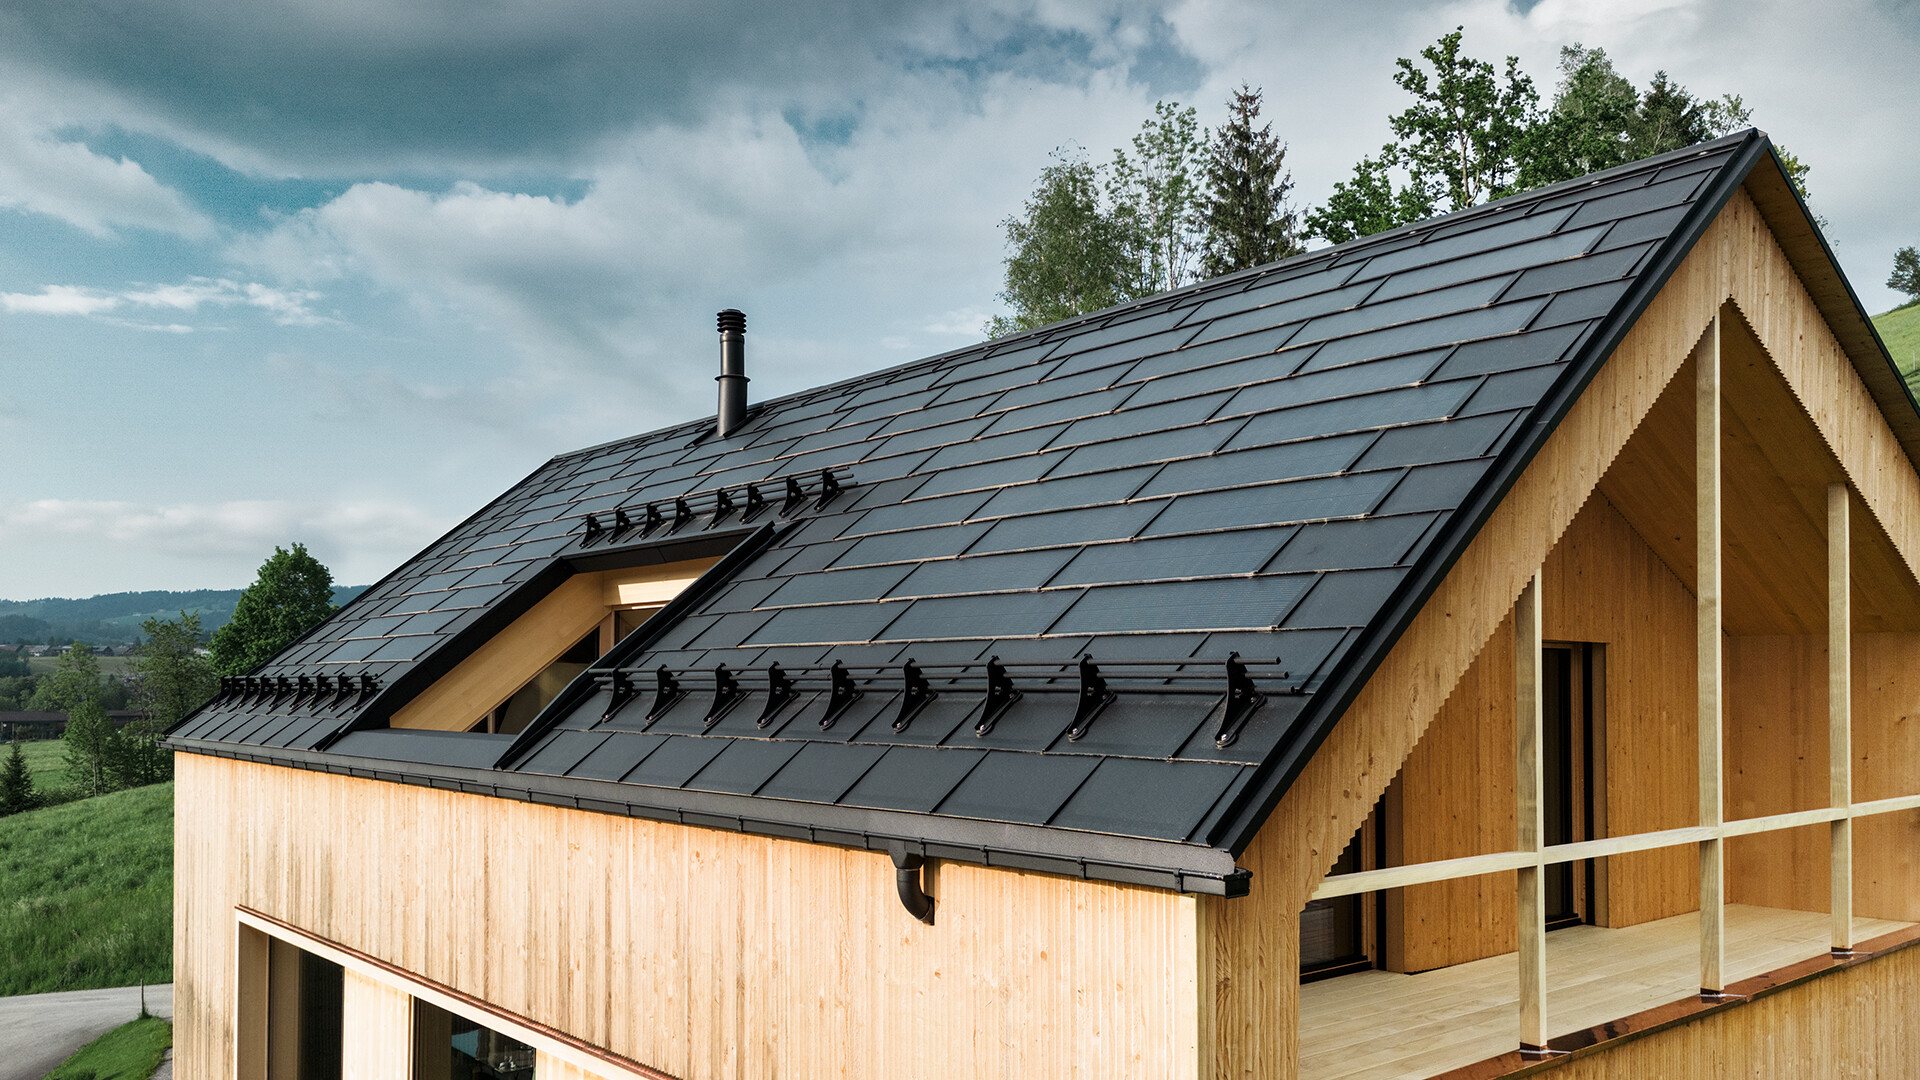 Tuile solaire PREFA noir sur une maison écologique à Egg, en Autriche - durable, économe en énergie et esthétique pour une architecture moderne. La tuile solaire innovante combine un toit résistant aux intempéries avec un système photovoltaïque. Les modules photovoltaïques intégrés s'intègrent harmonieusement dans le toit de la maison individuelle.